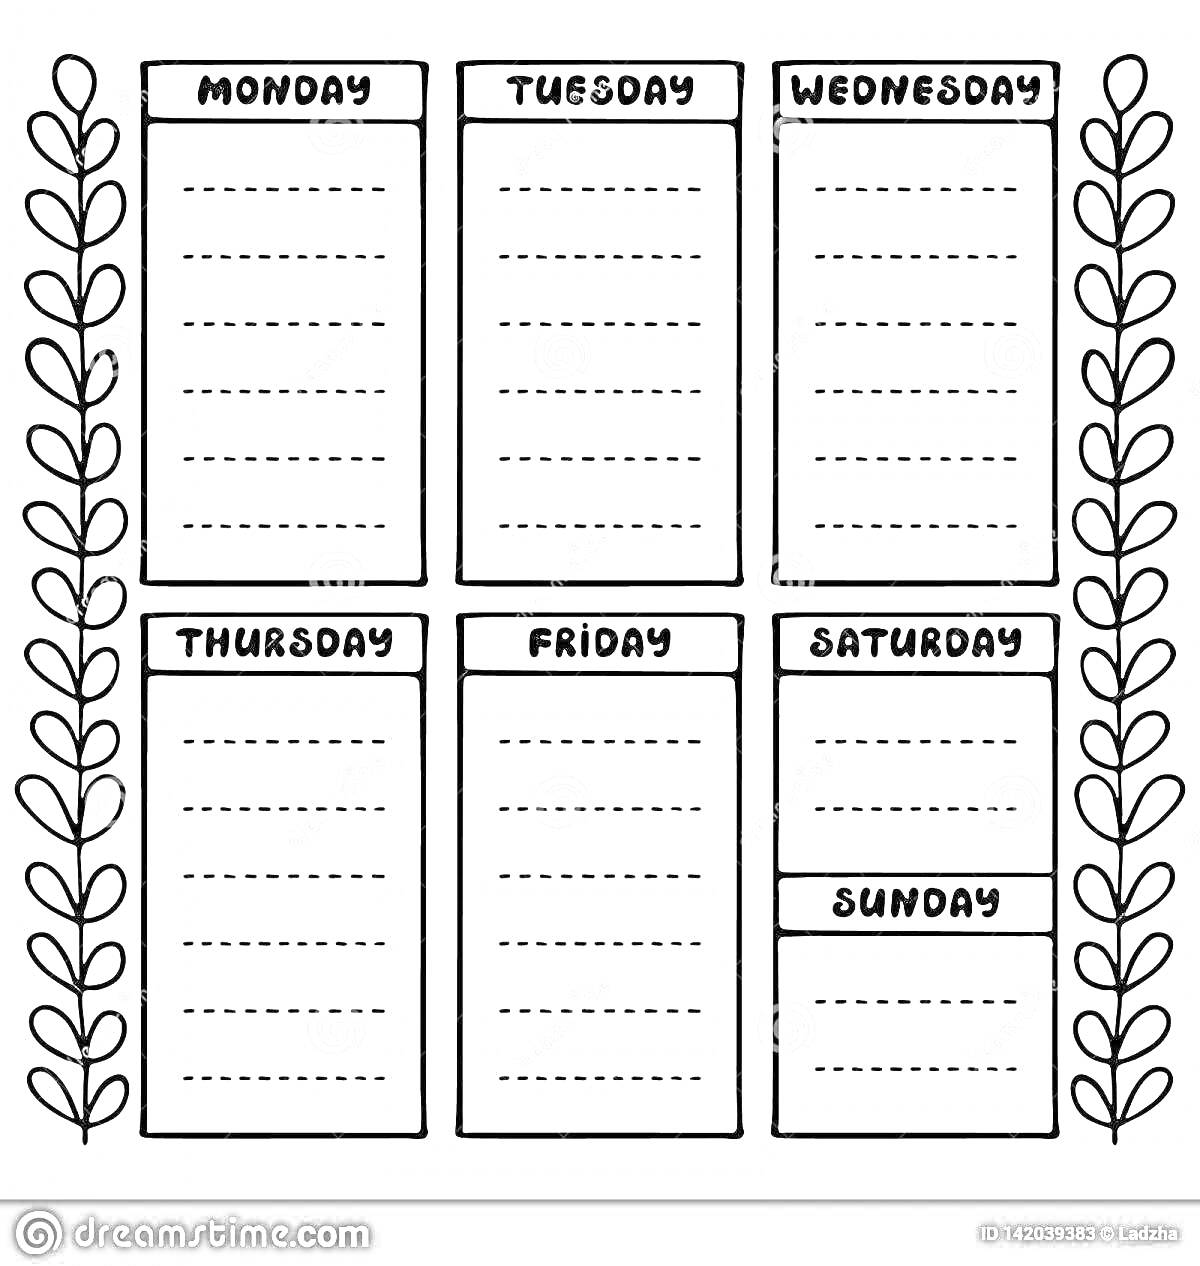 Раскраска Планер с днями недели, включая понедельник, вторник, среду, четверг, пятницу, субботу и воскресенье, с узором из растительных листьев по бокам.